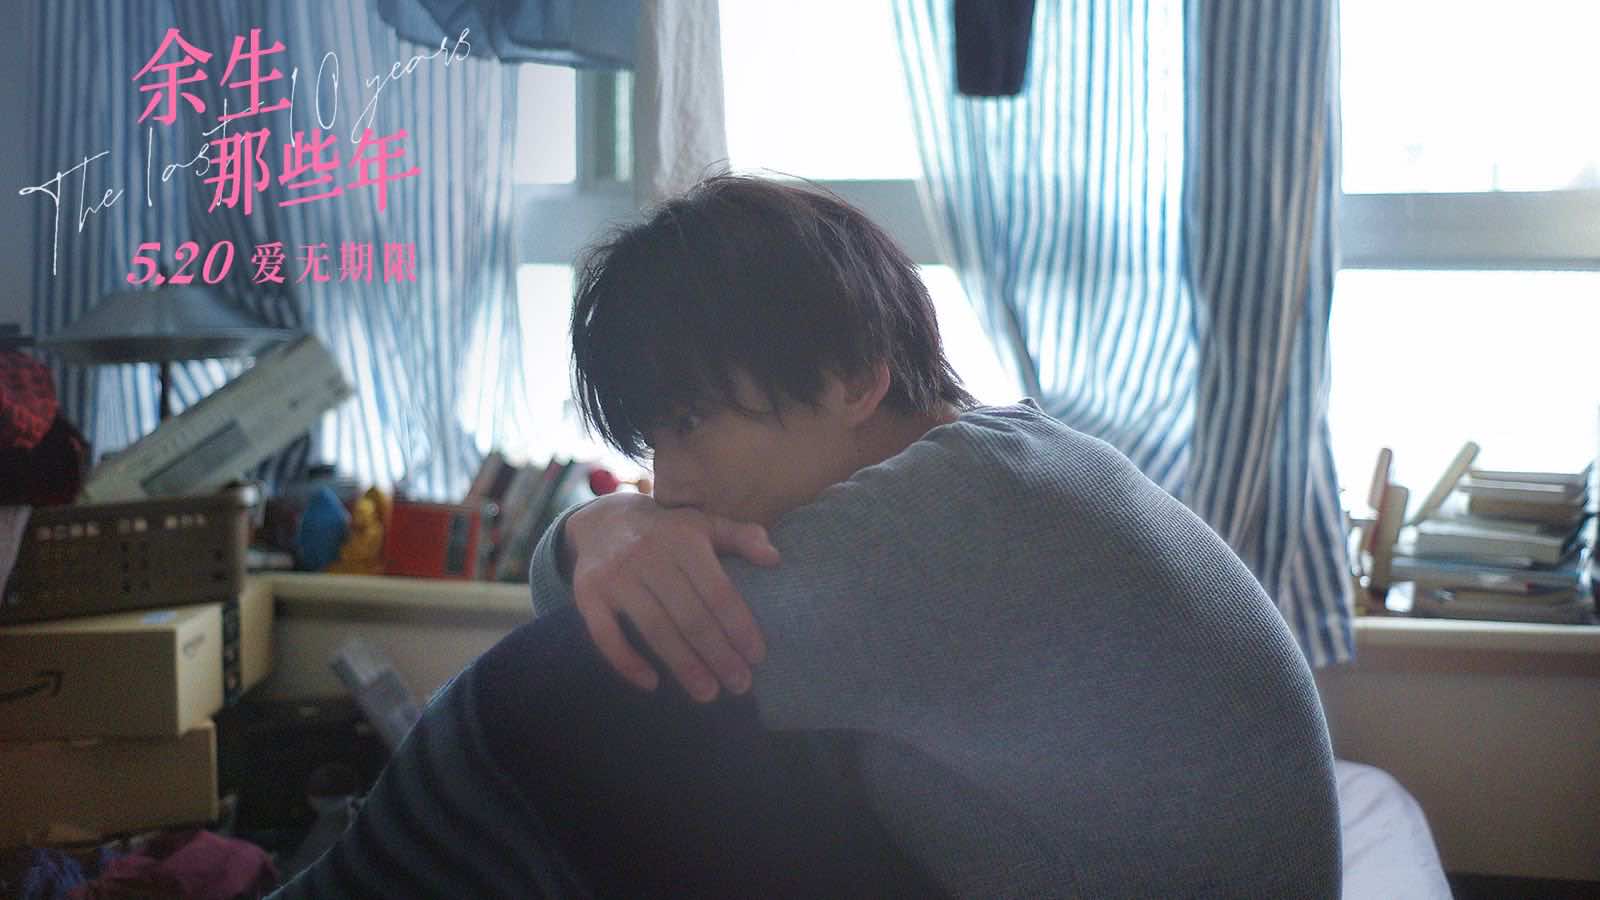 《余生那些年》5.20浪漫观影首选 小松菜奈坂口健太郎等你见面